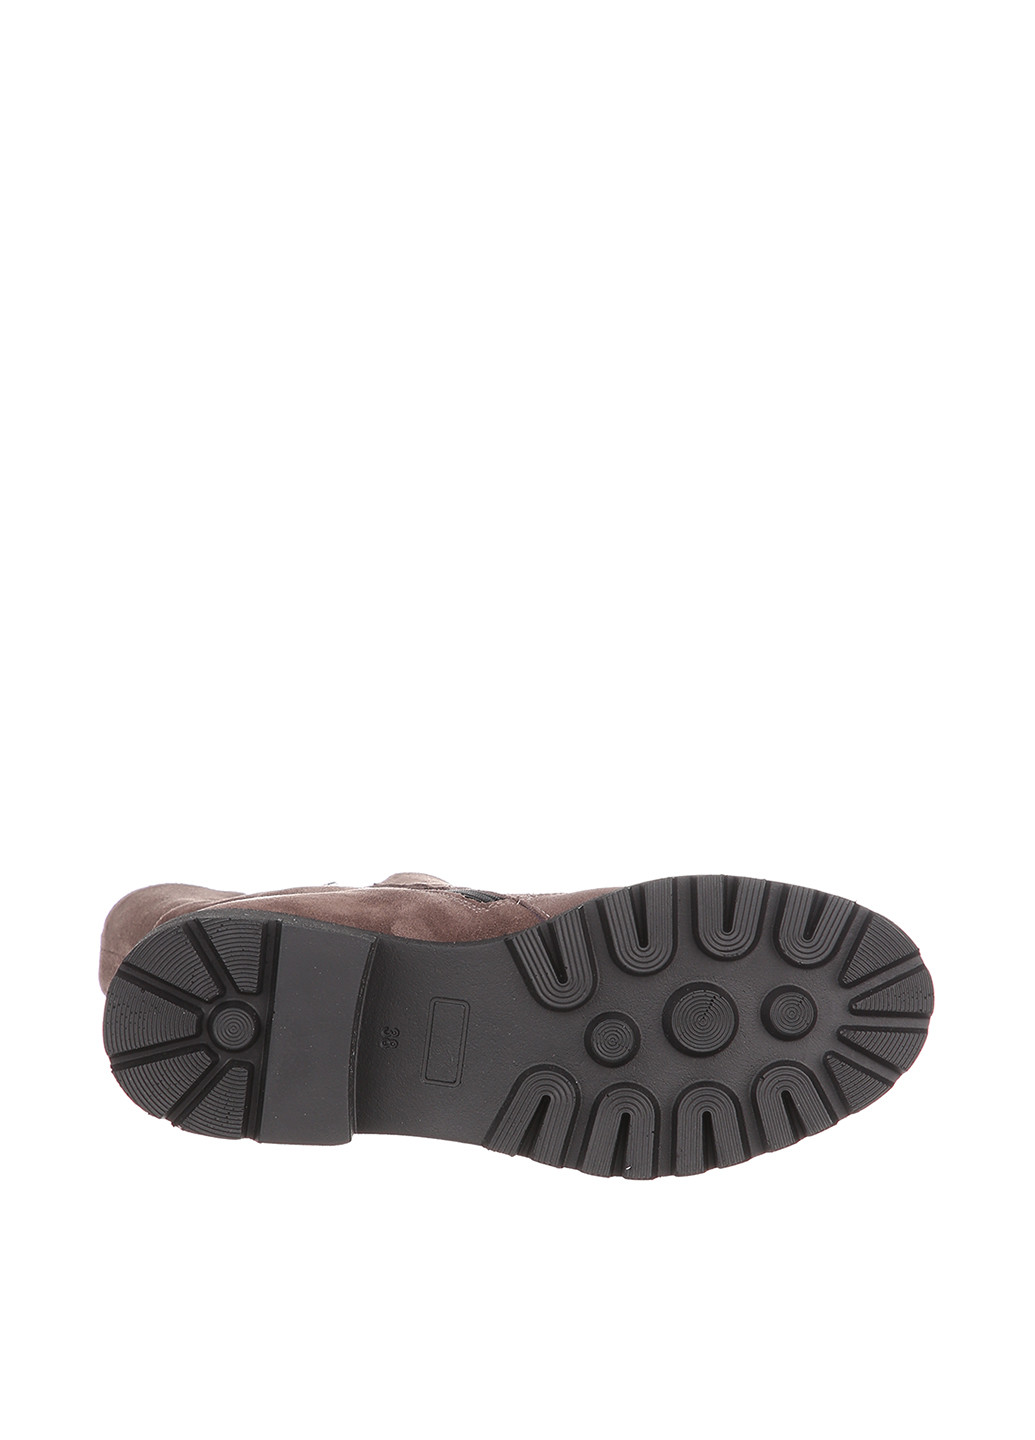 Зимние ботинки чопперы Roberto Maurizi без декора из искусственной замши